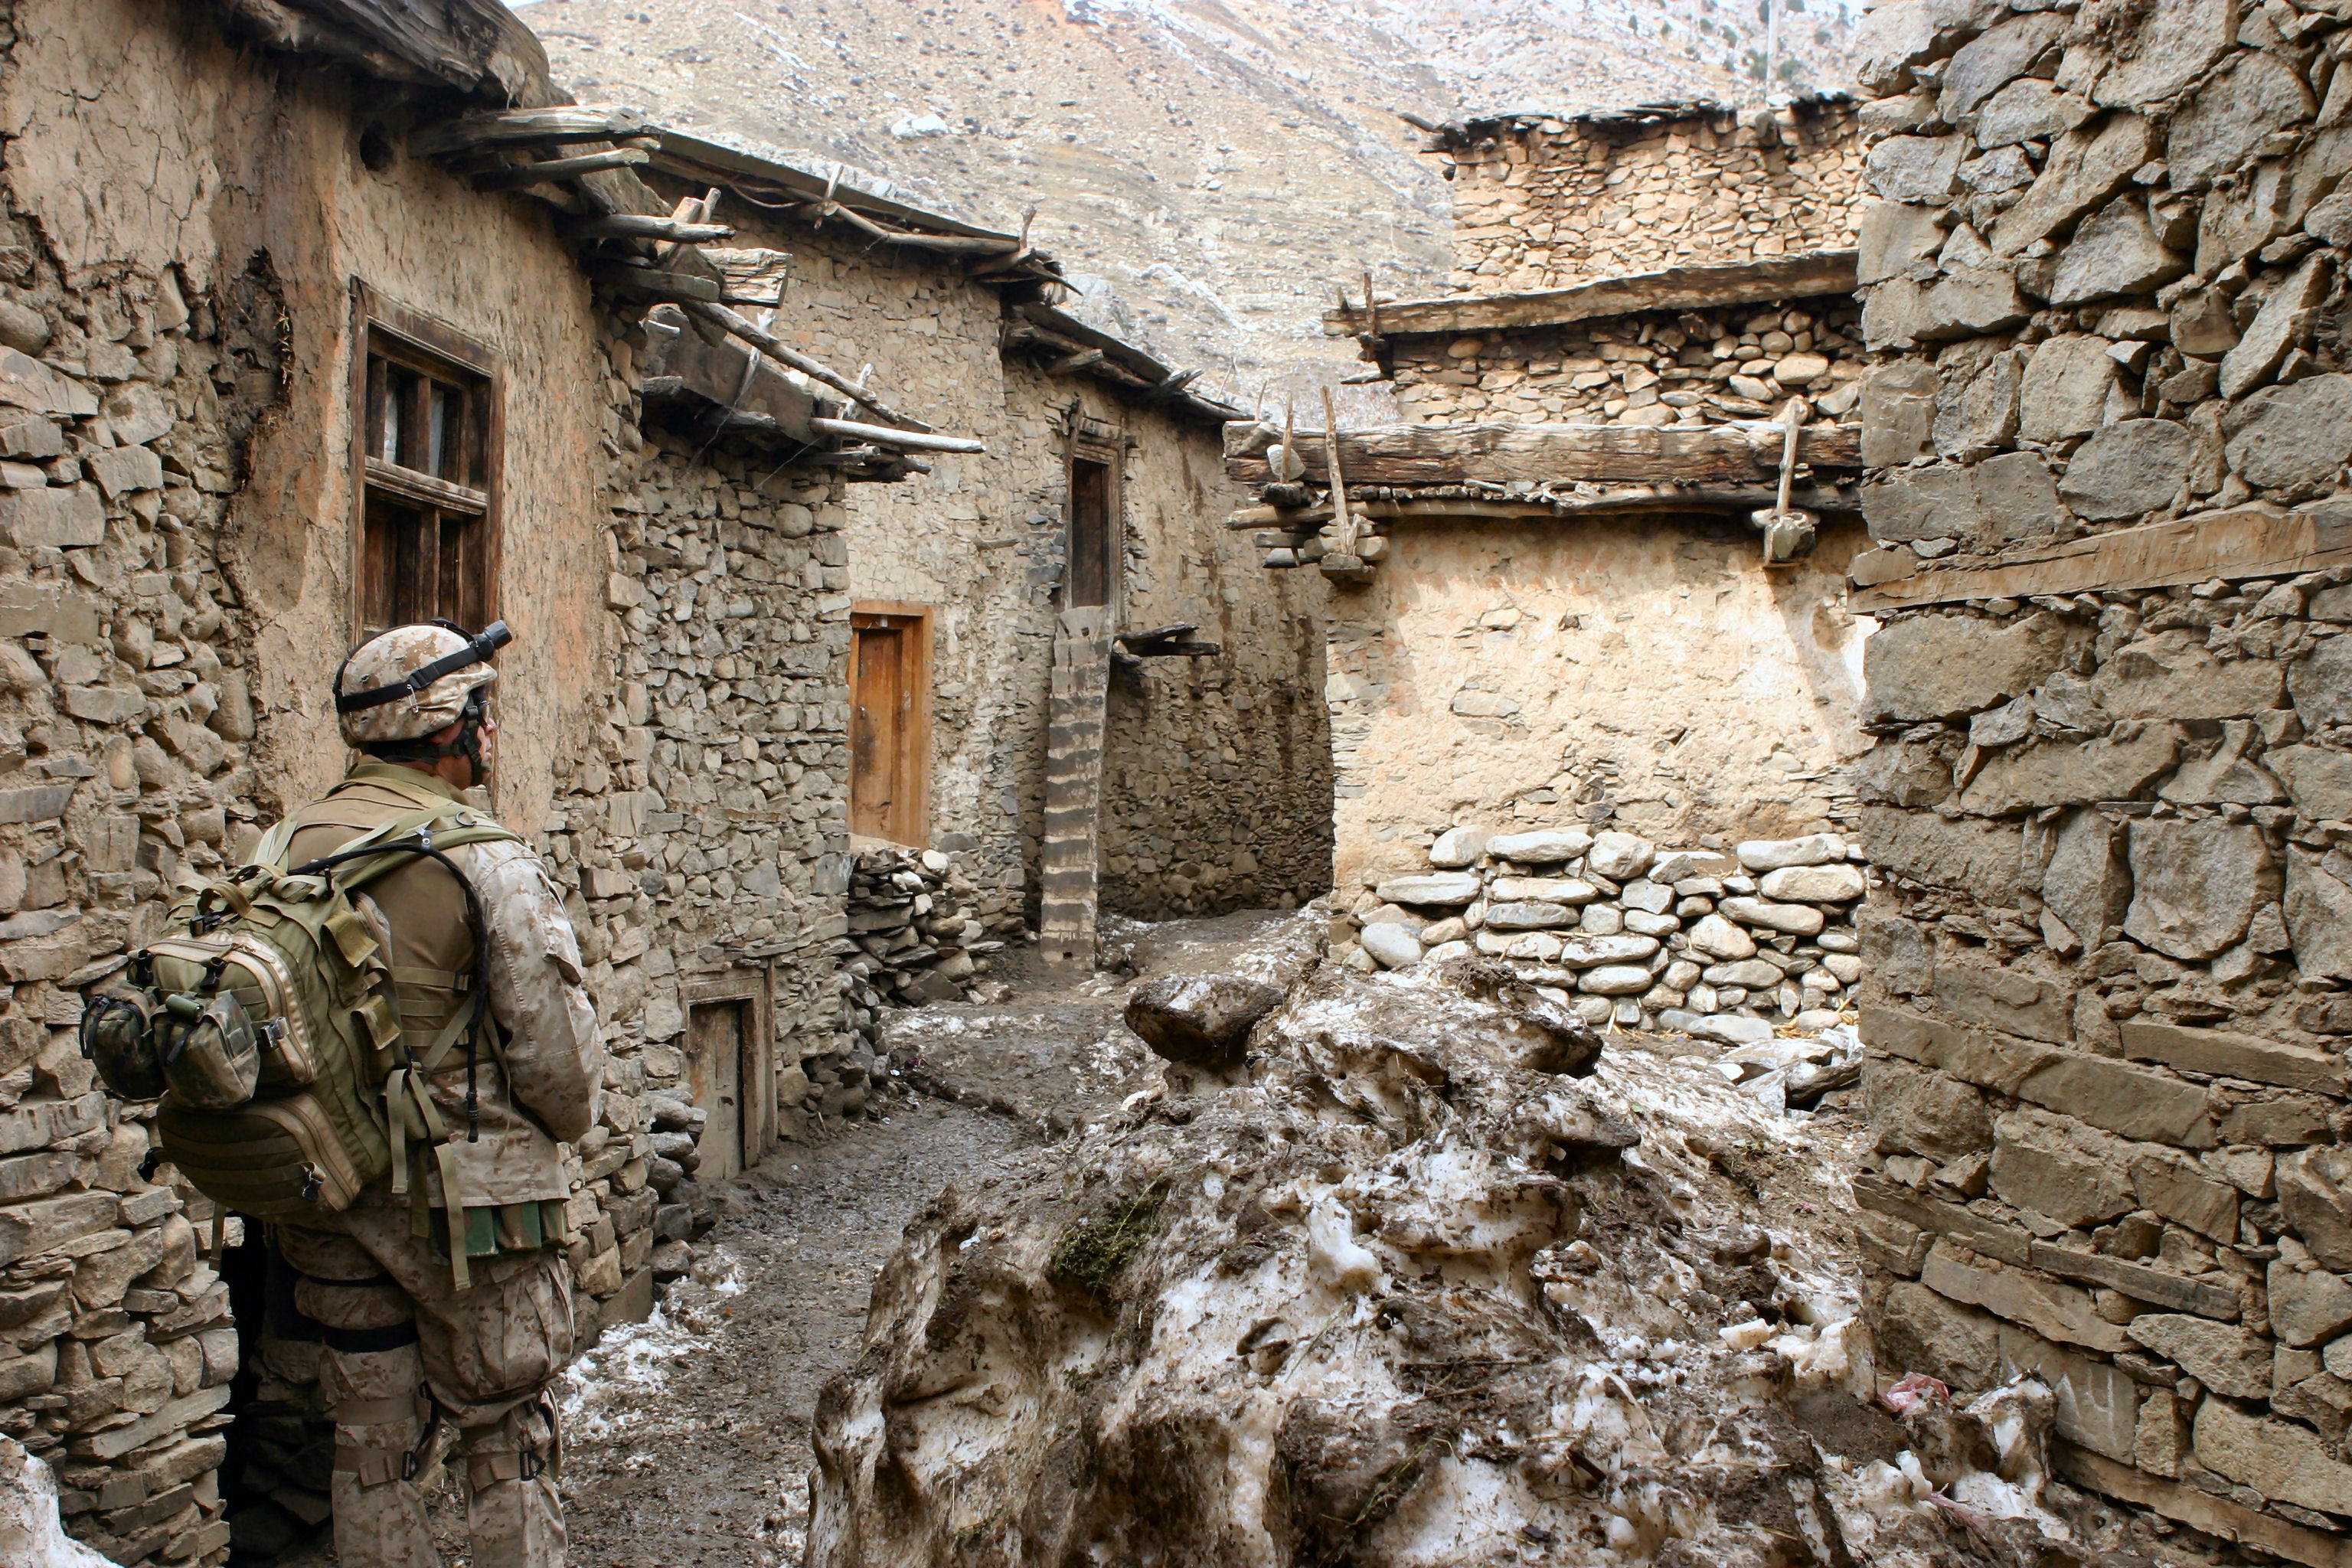 Soldados norte-americanos patrulham o Afeganistão (Foto: Wikimedia Commons)